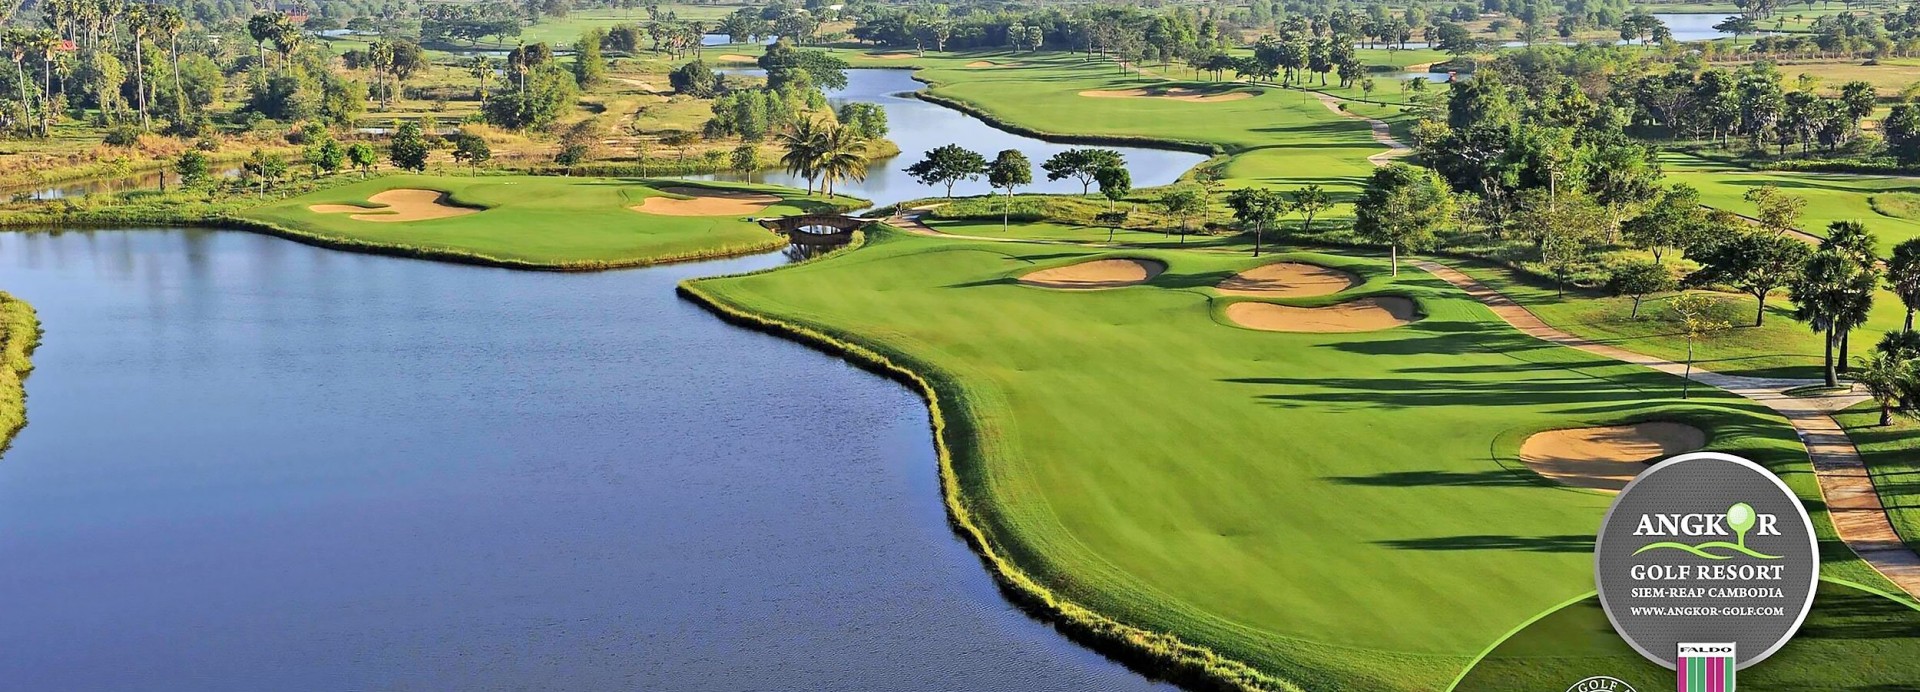 Angkor Golf Resort  | Golfové zájezdy, golfová dovolená, luxusní golf